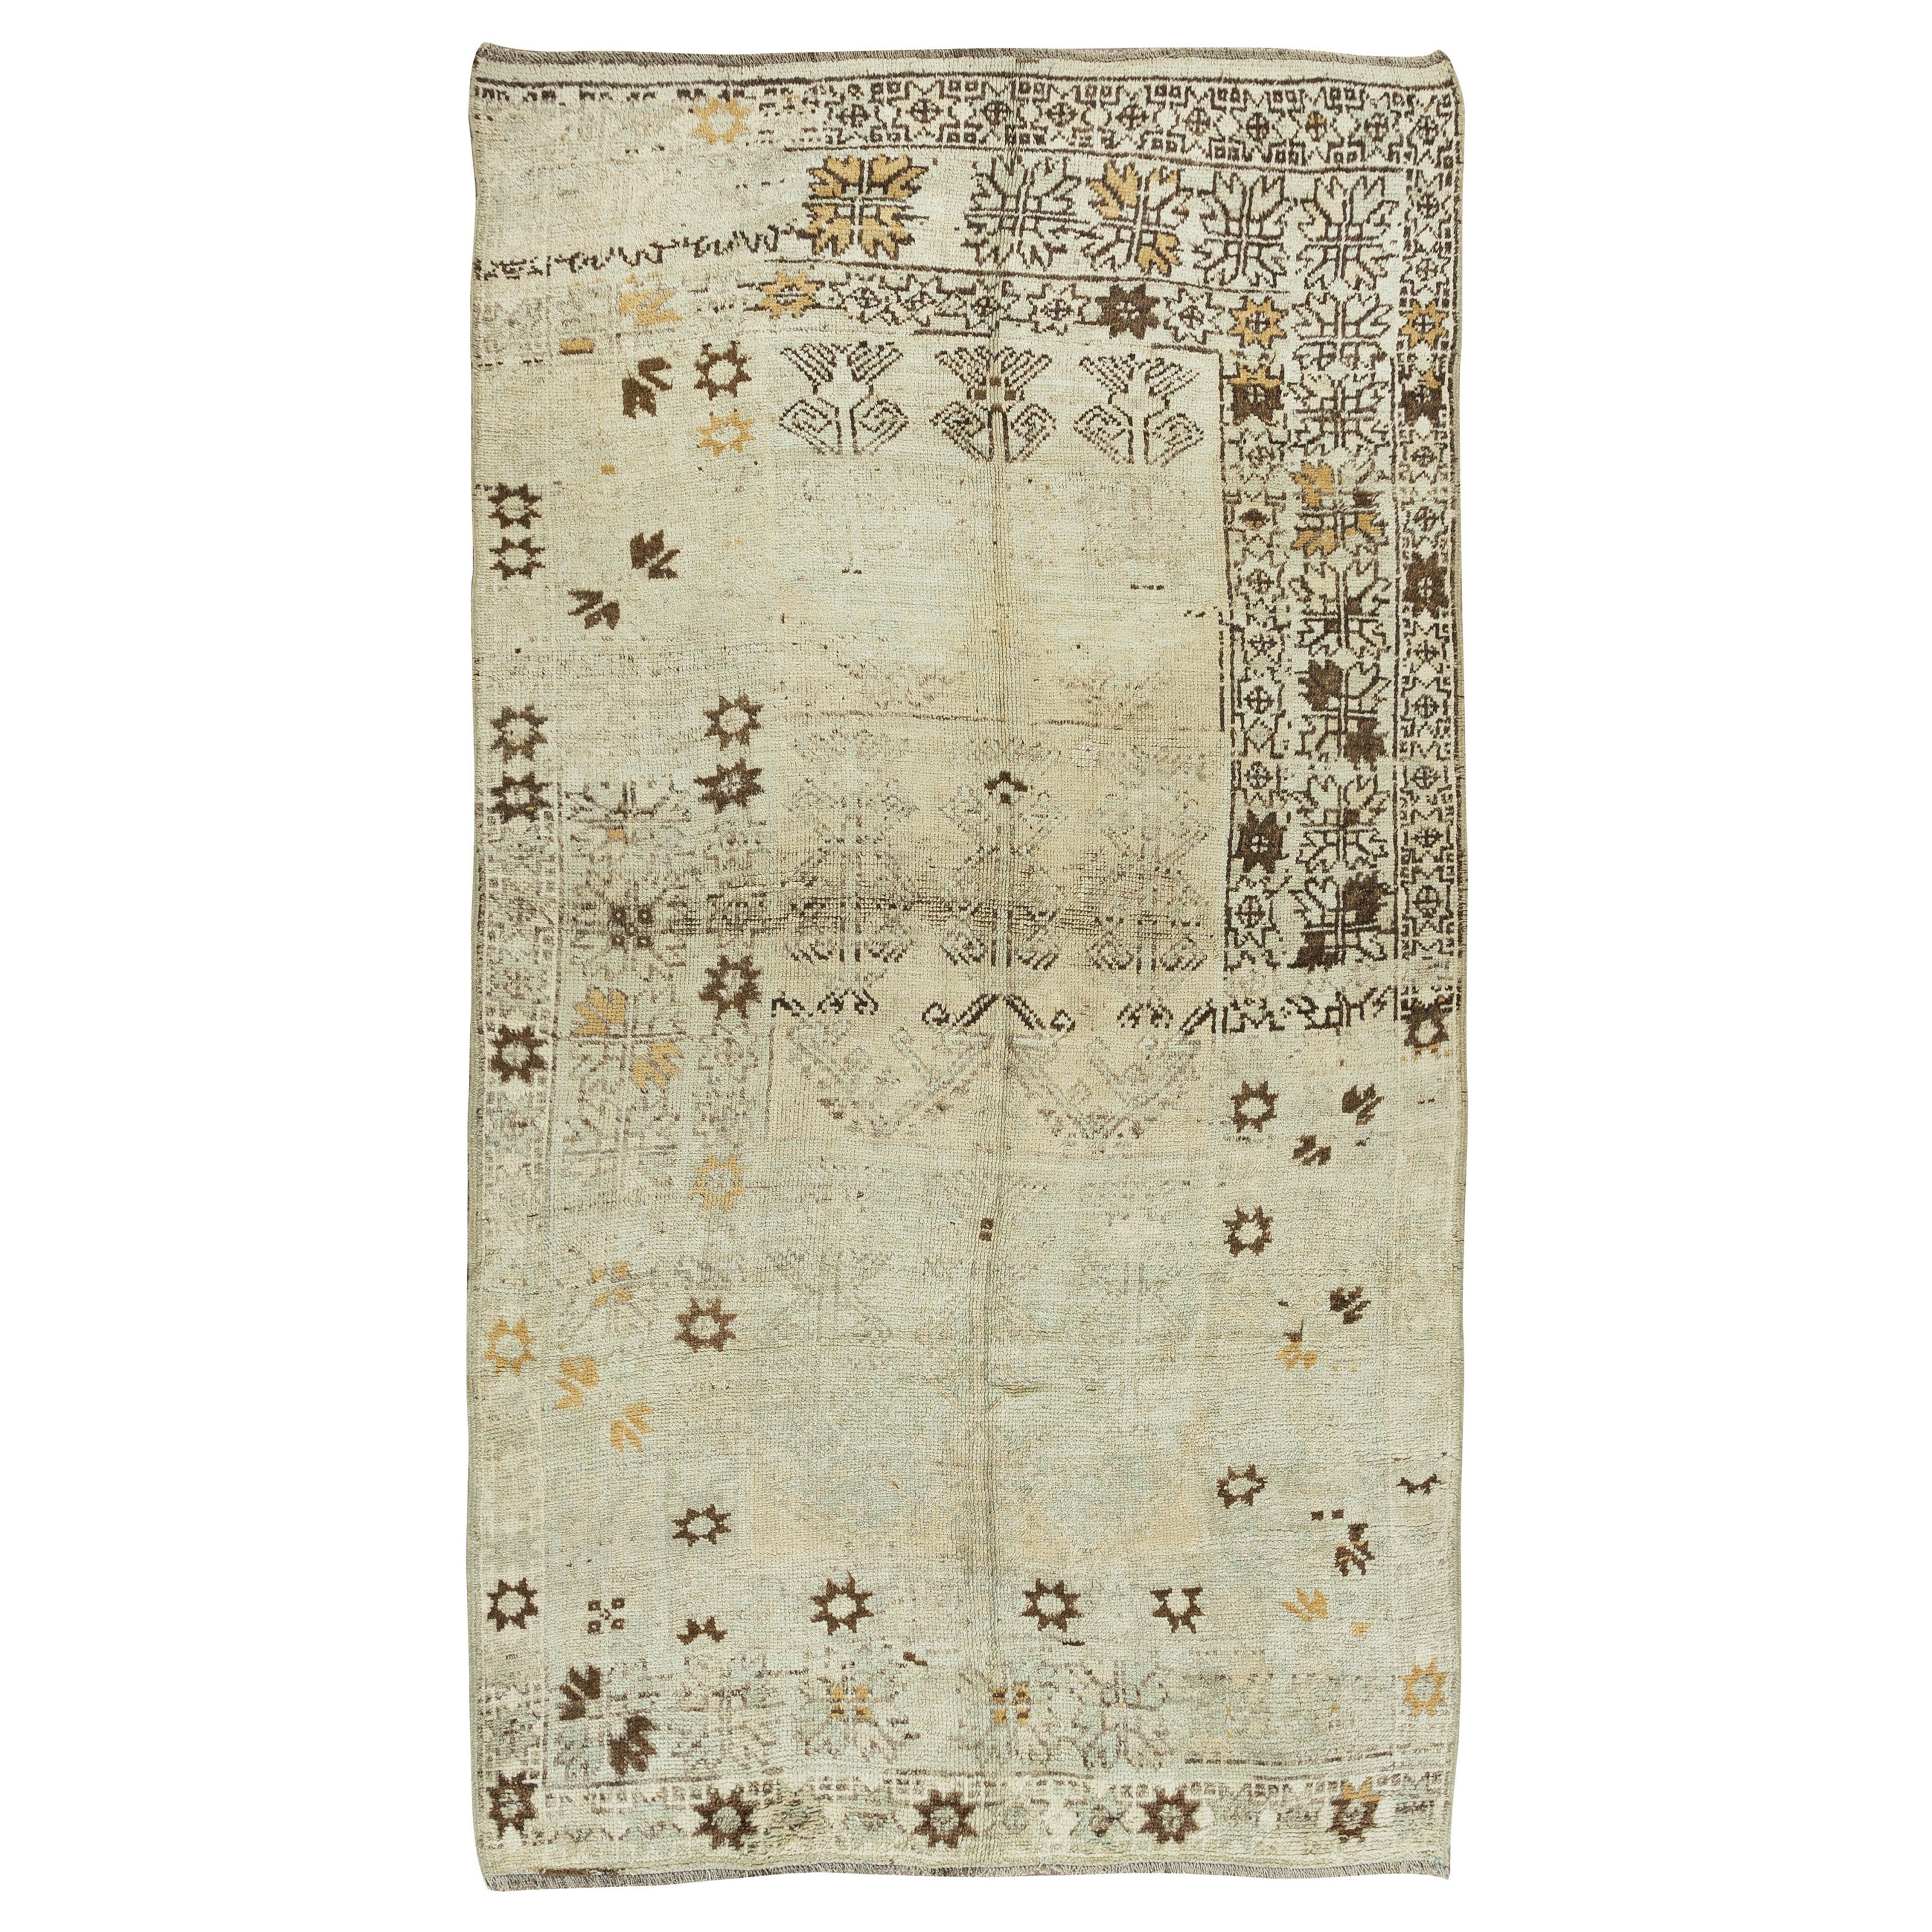 5.2x9.2 Ft Neutral Colors Handmade Rug, Antique Washed Vintage Oushak Carpet For Sale